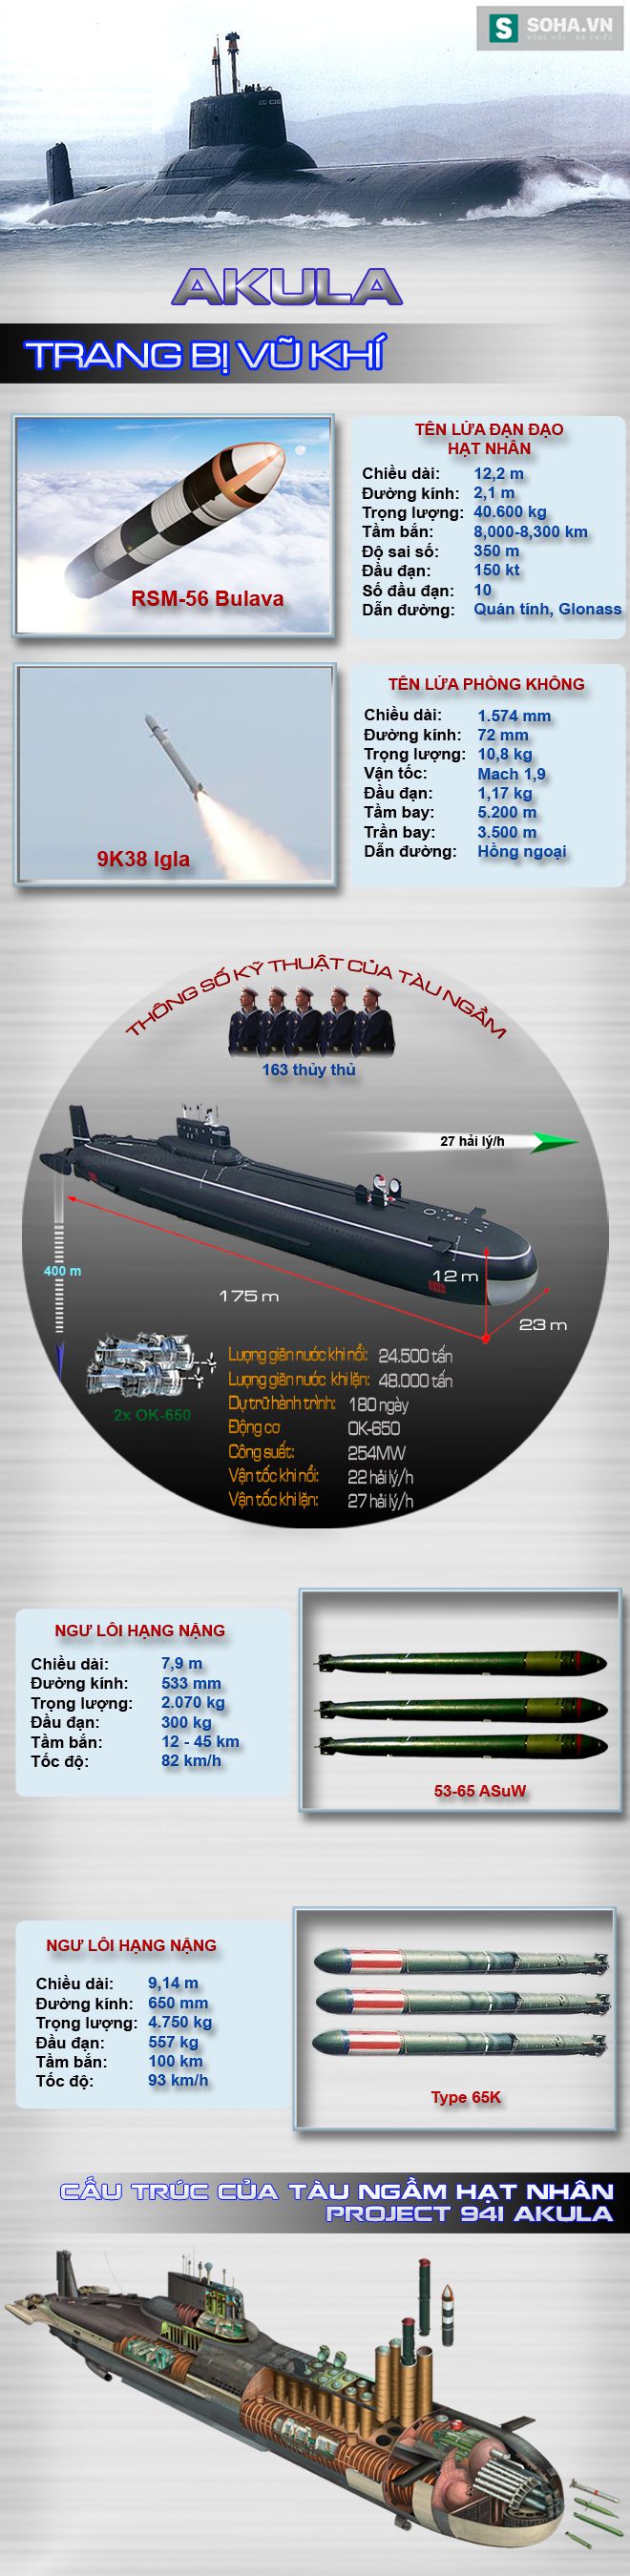 Khám phá sức mạnh tàu ngầm hạt nhân lớn nhất thế giới của Nga - Ảnh 2.